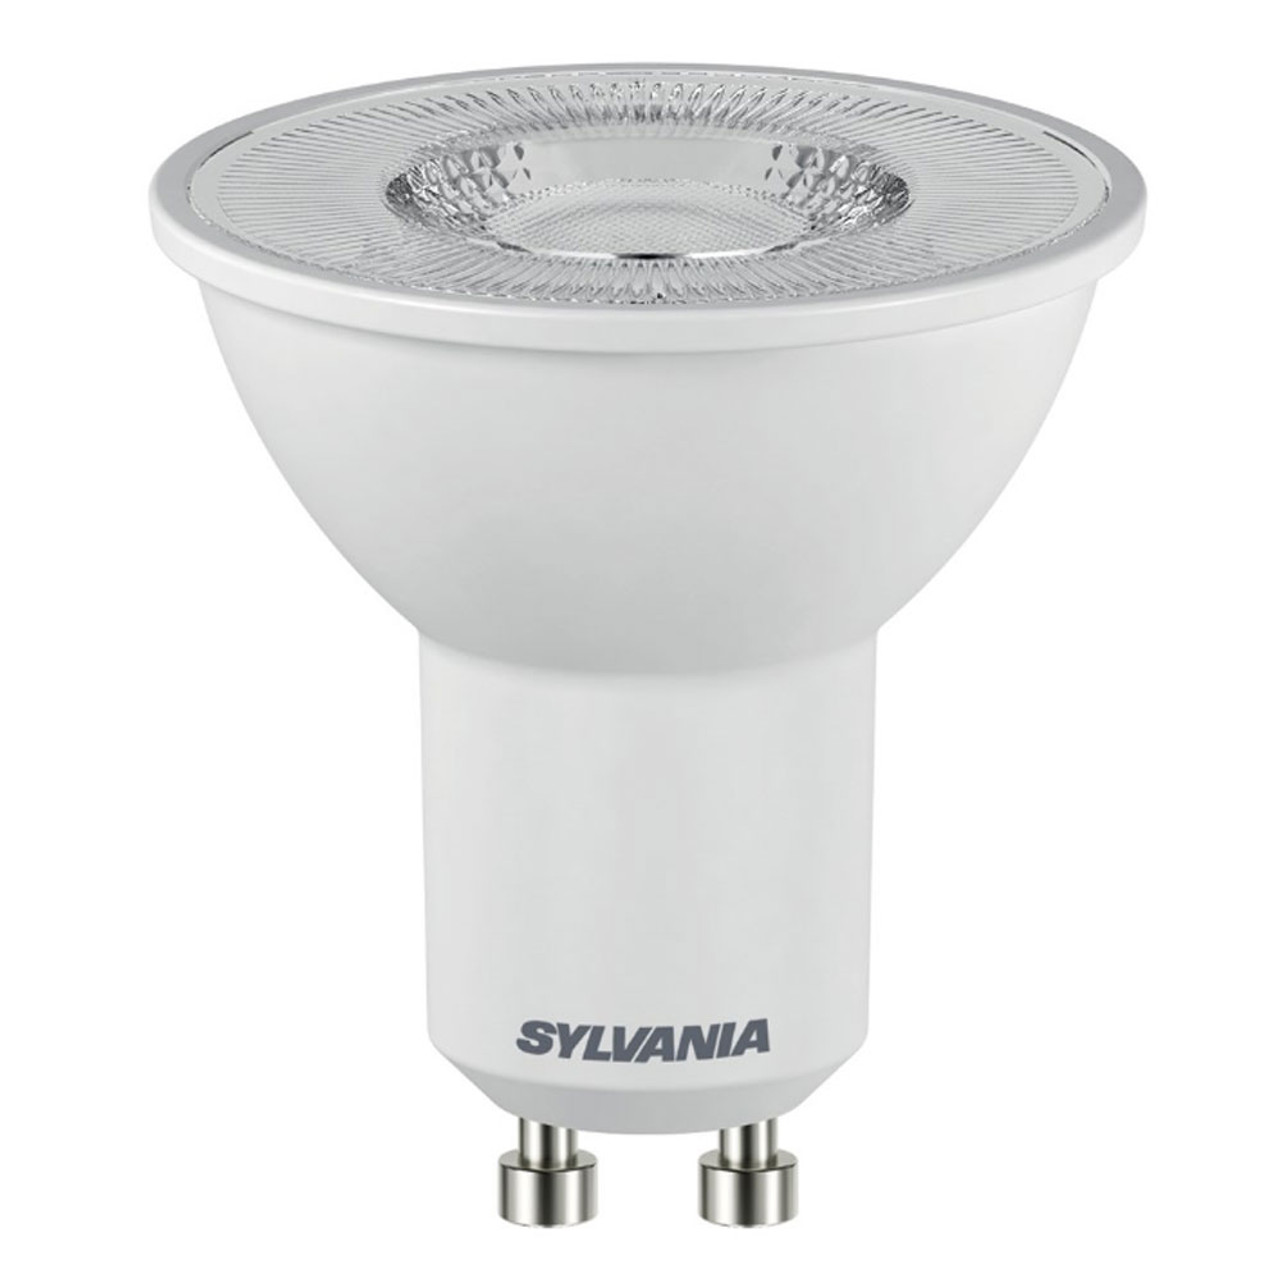 Sylvania LED GU10 4.2W (50W) Cool White 36 Degrees